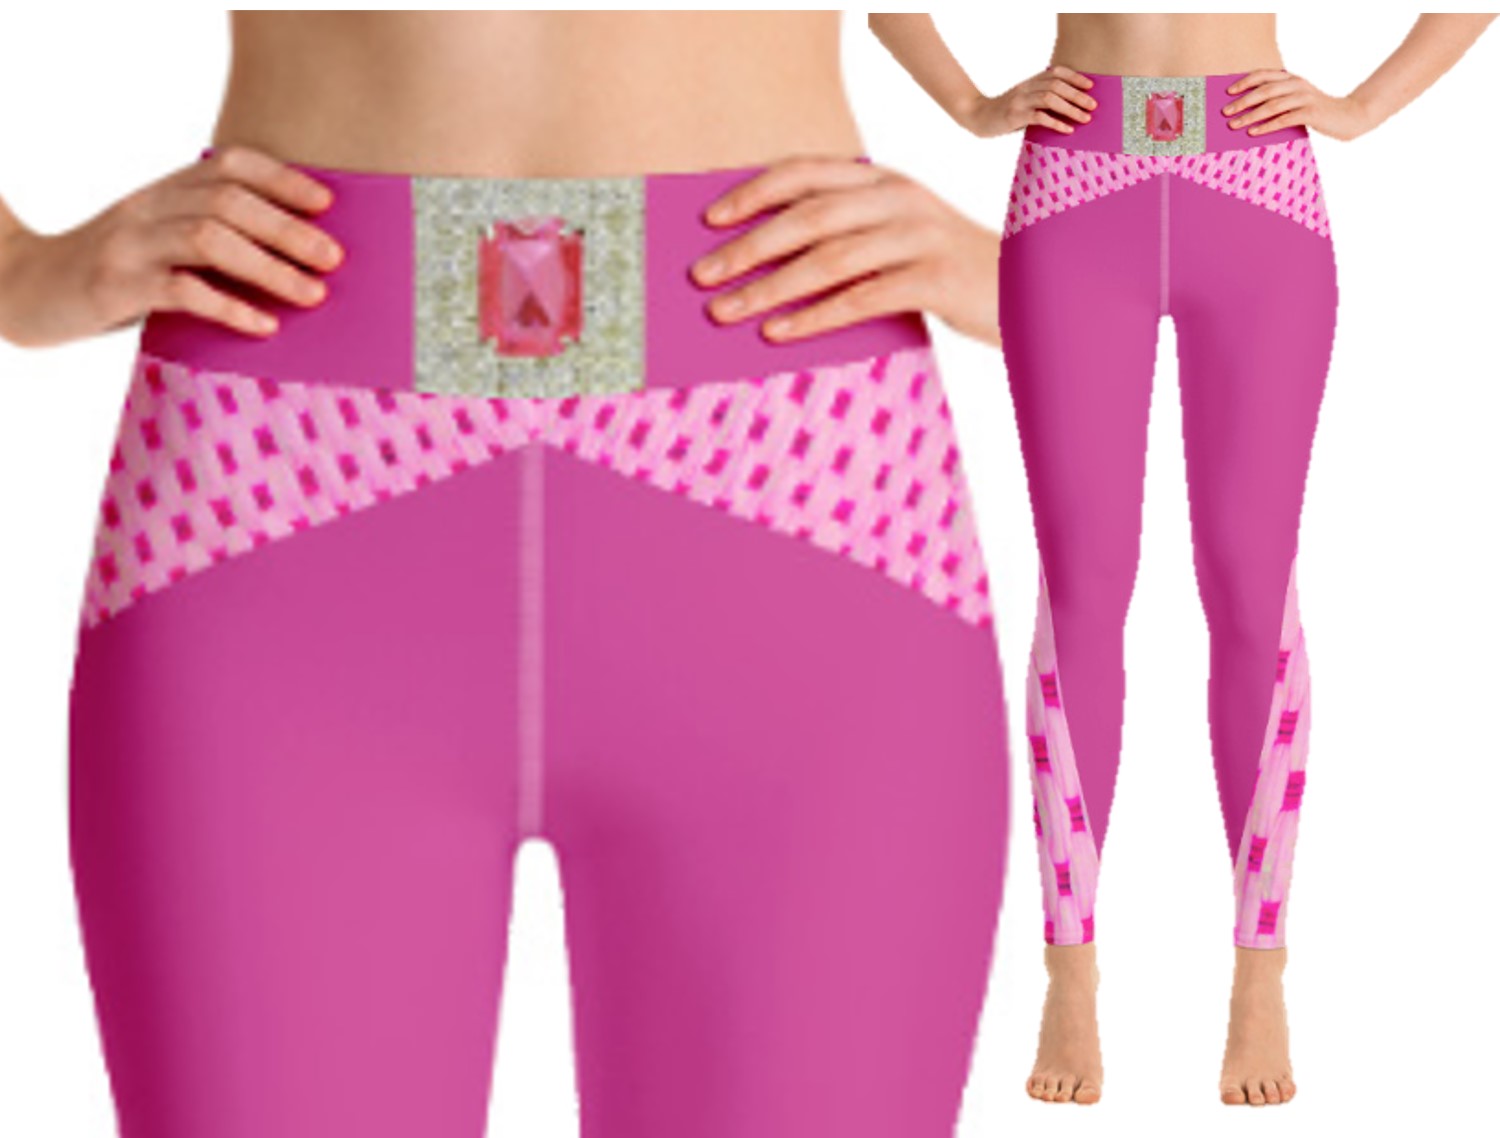 https://artikrti.com/cdn/shop/products/Pink-diamond-_workout-wear-yoga-pants-sports-bra-gym-leggings-artikrti_pf_lgct_20005a_1_2b5539eb-be56-43a3-a461-abc9f9c6b011.jpg?v=1581976609